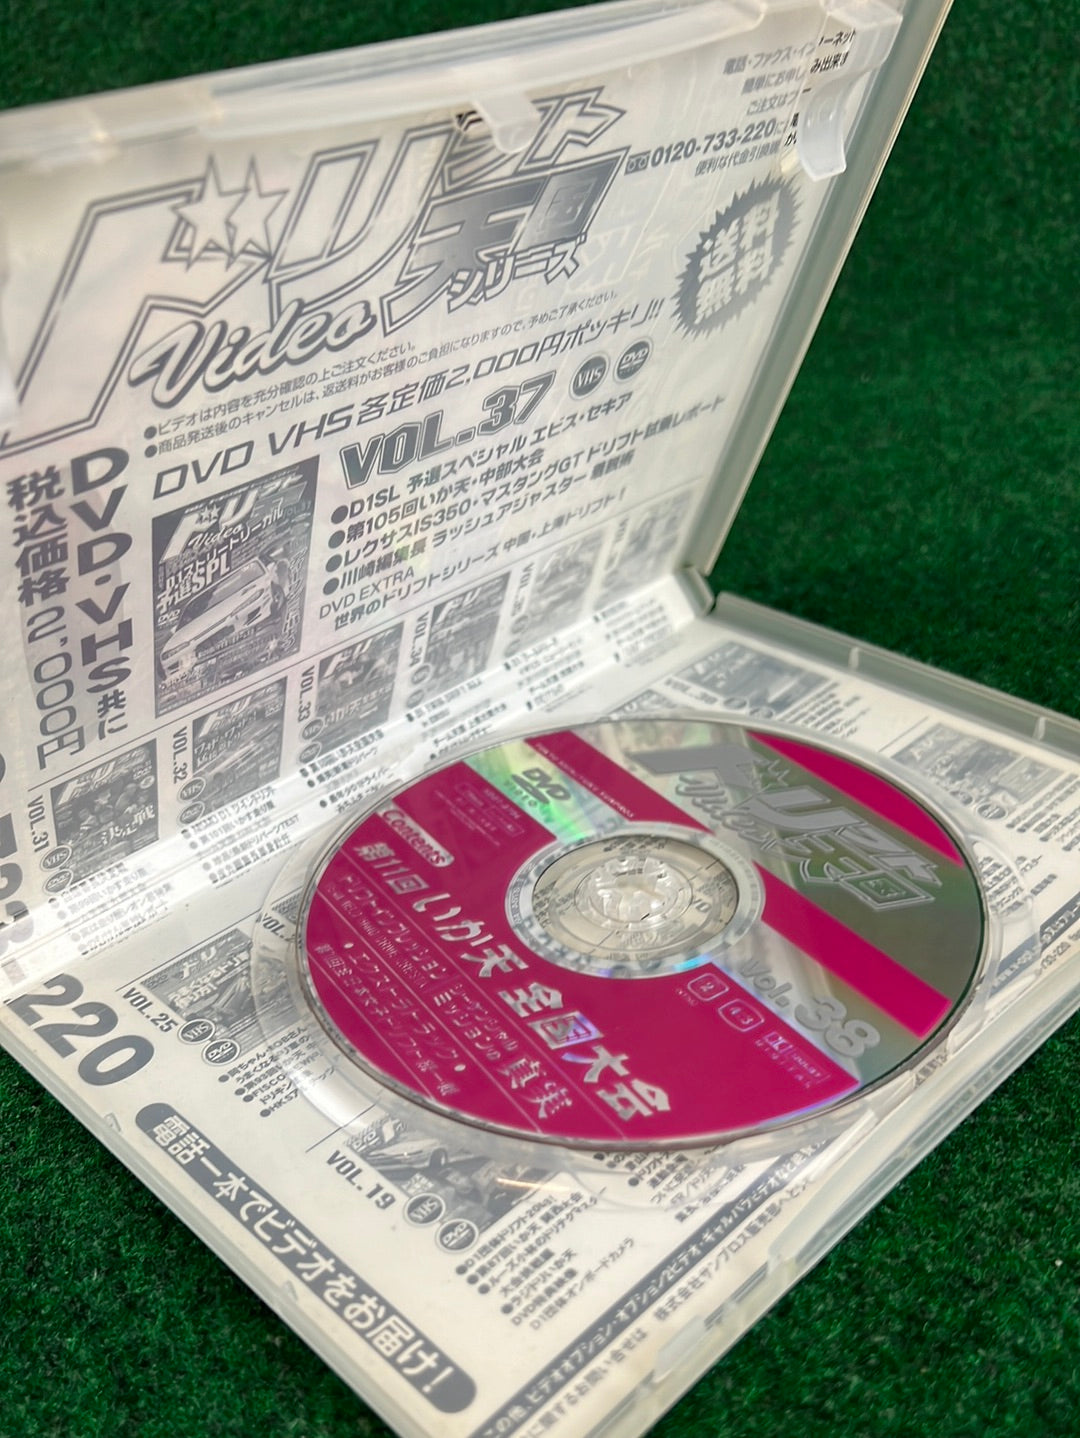 Drift Tengoku DVD - Vol. 38